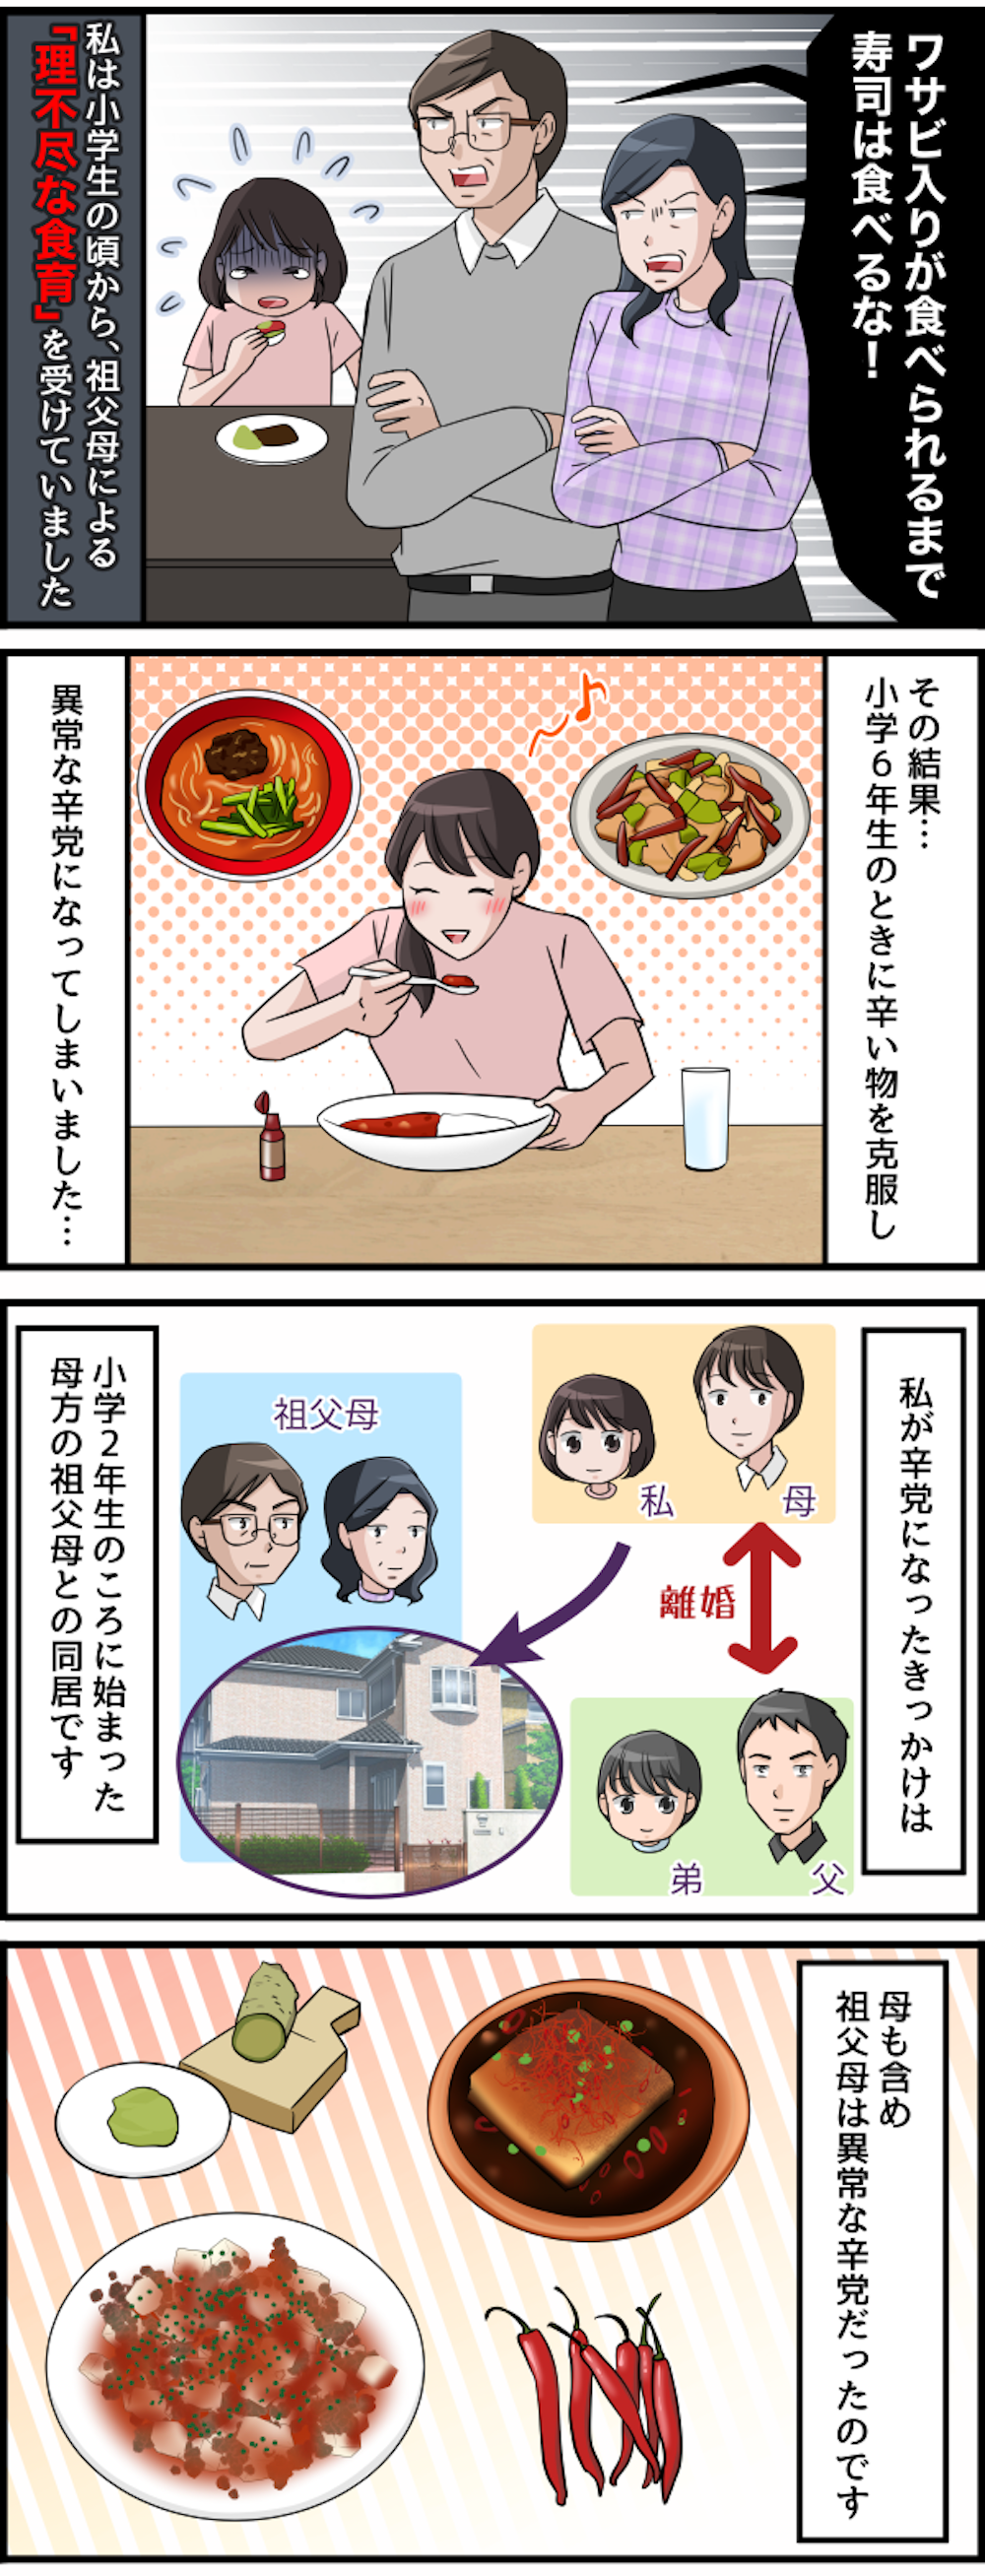 【漫画】「残すなら食べるな！」異常な辛党の祖父母による「理不尽な食育」＜前編＞ #236-1.png